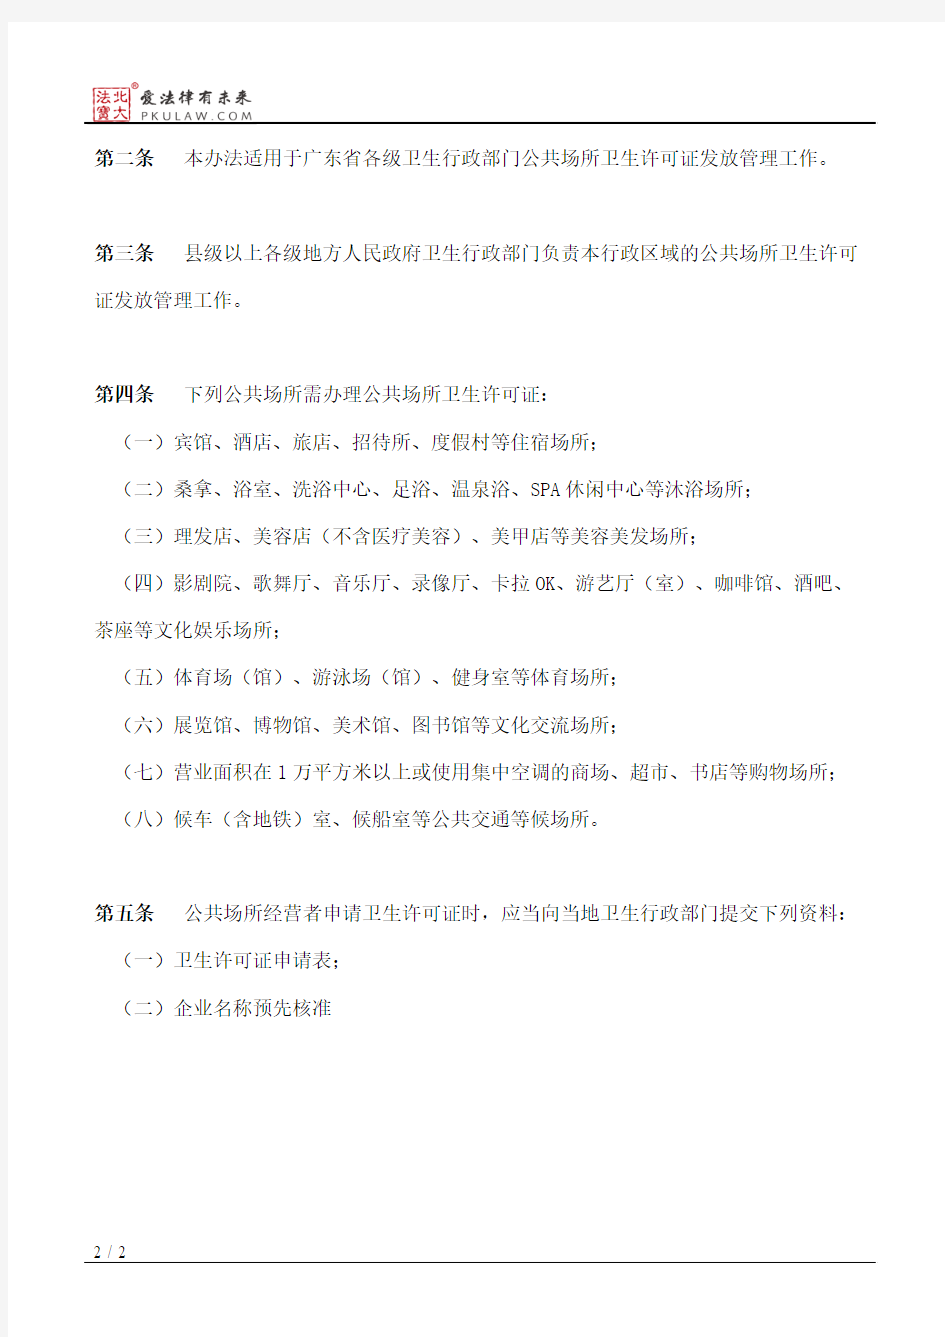 广东省卫生厅关于公共场所卫生许可证发放的管理办法